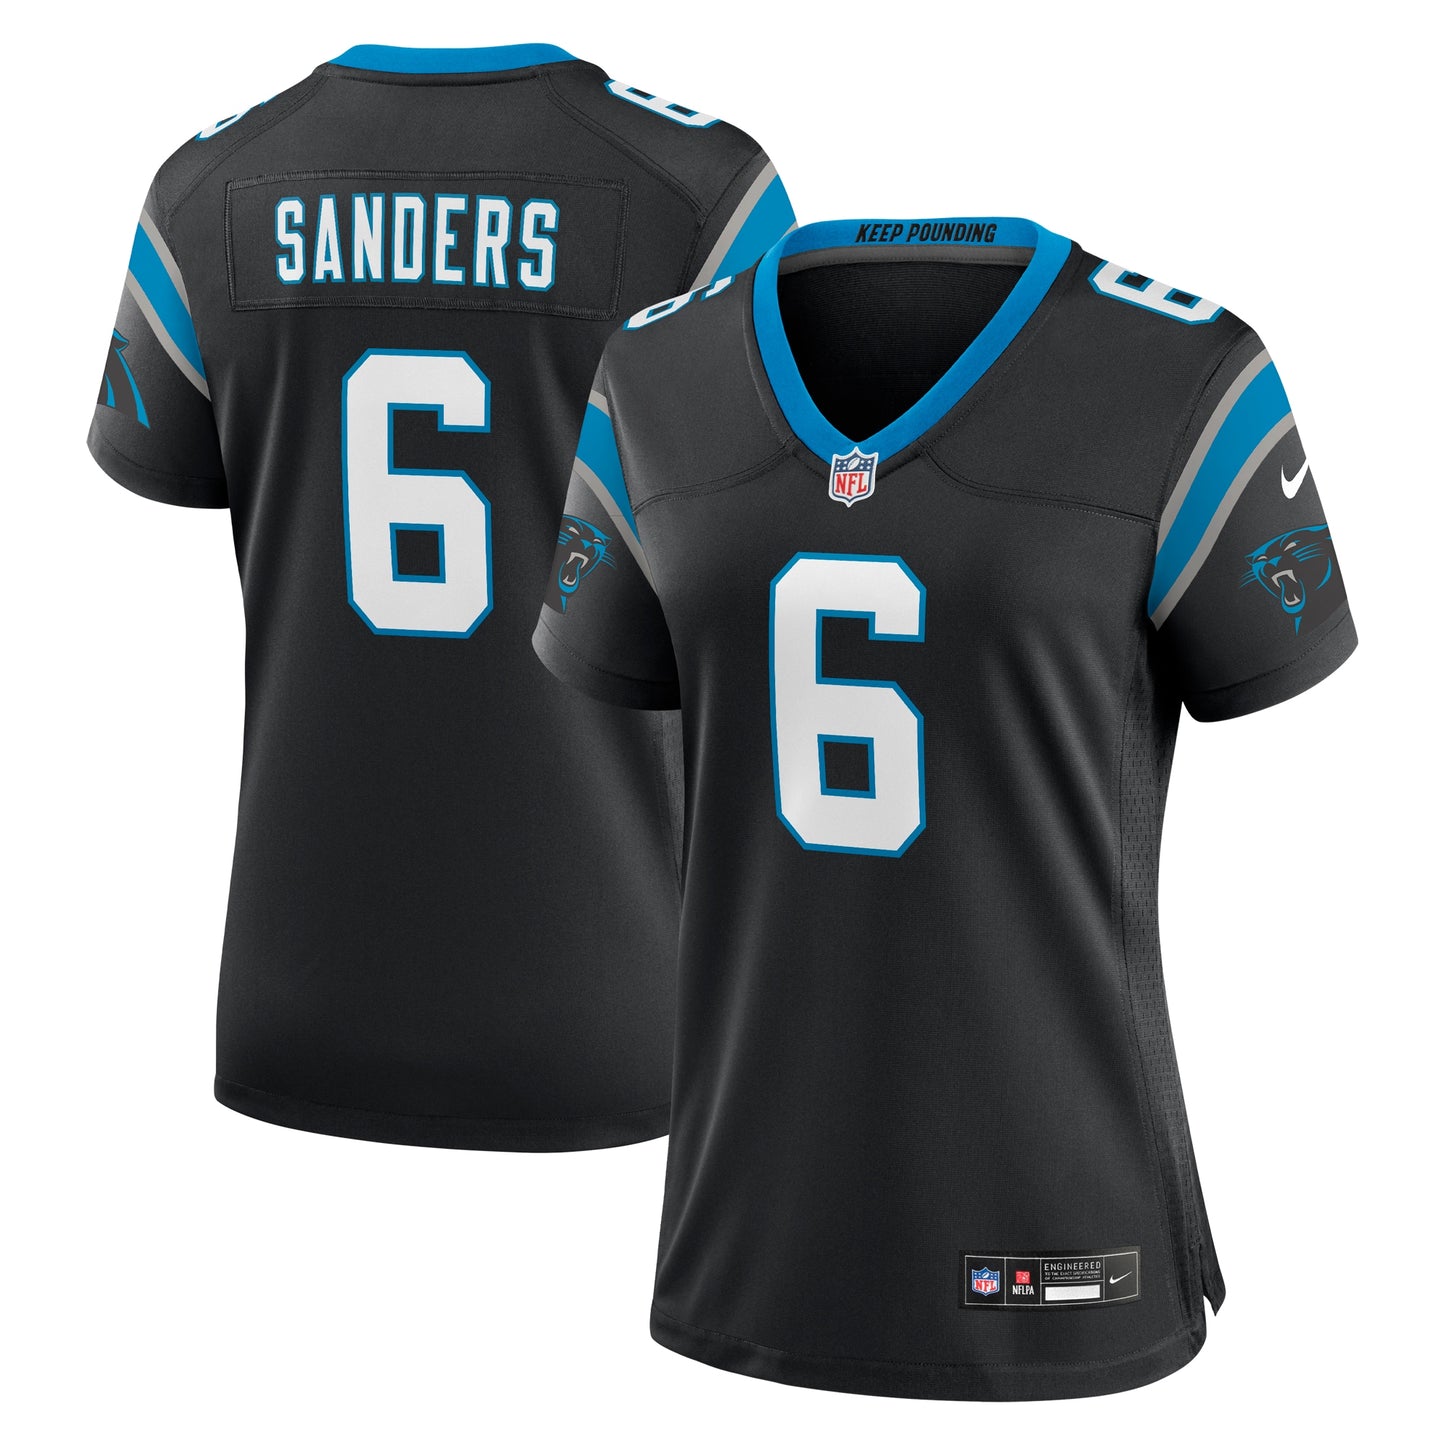 Miles Sanders Carolina Panthers Nike Women's Team Game Jersey - Black